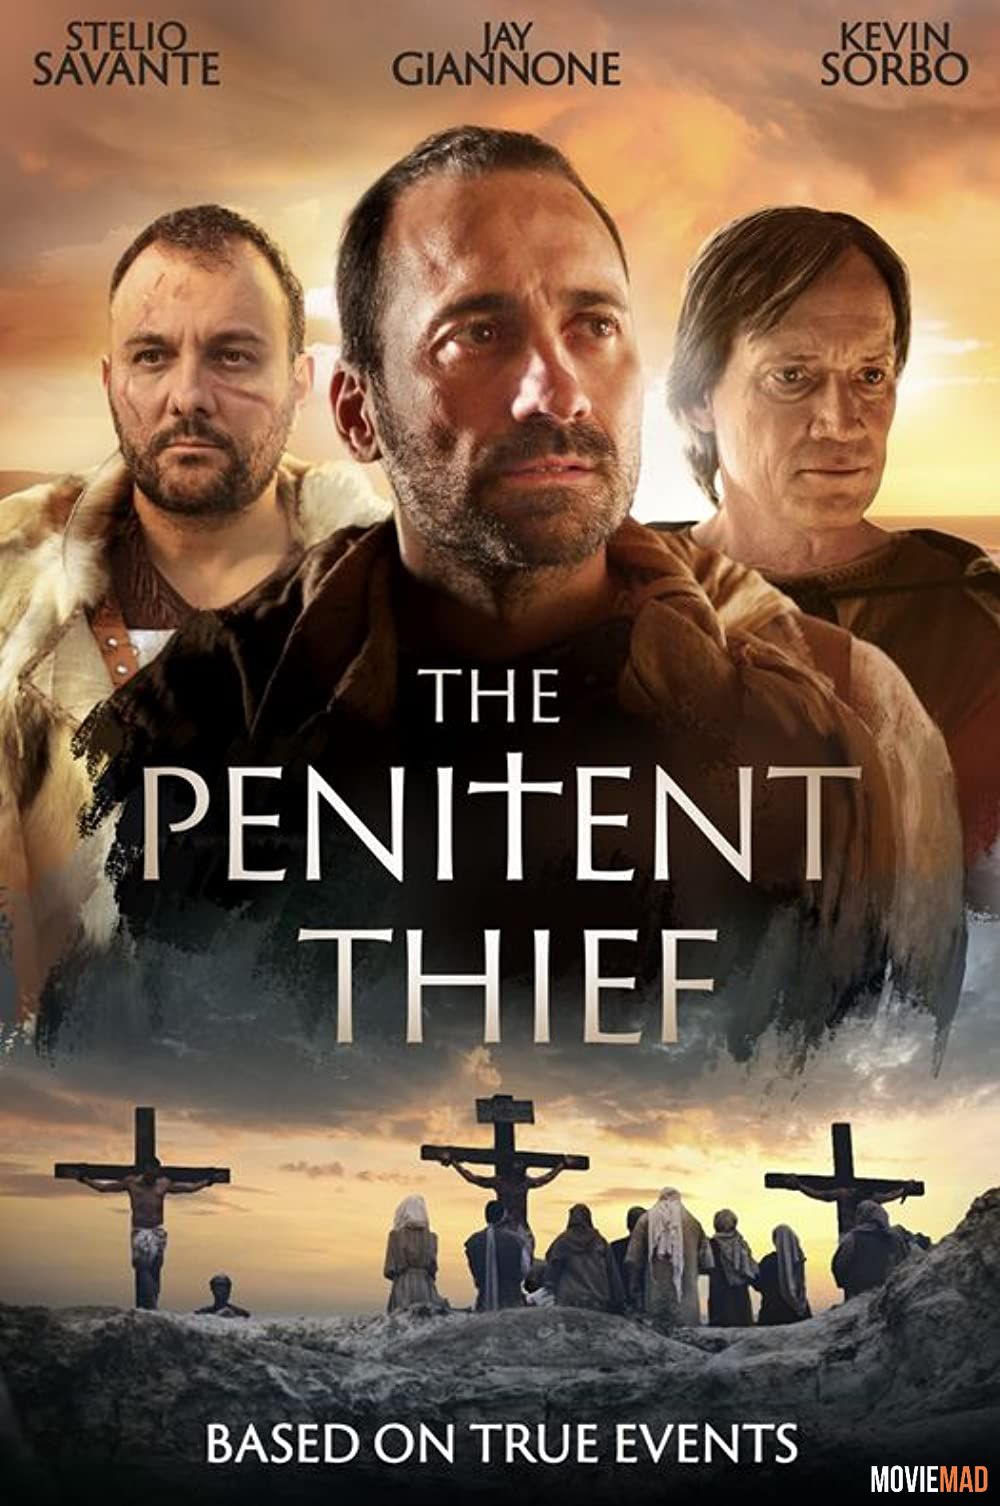 The Penitent Thief 2020 English HDRip Full Movie 720p 480p